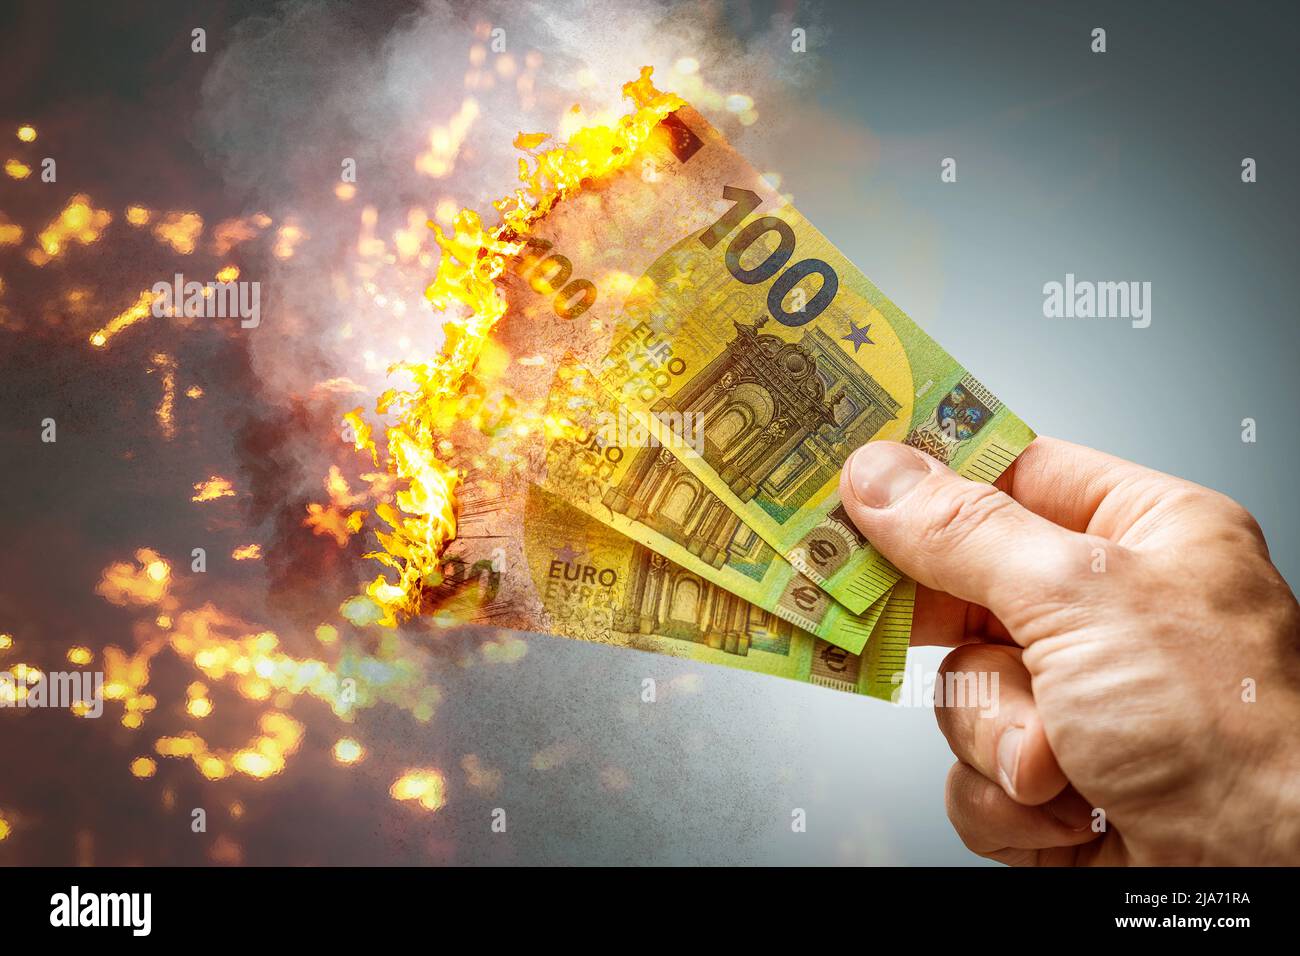 Feuer Brennende 100 Euro Geldscheine, Verlieren Von Geld, Rezession Und Inflation Konzept FOTOMONTAGE Stock Photo